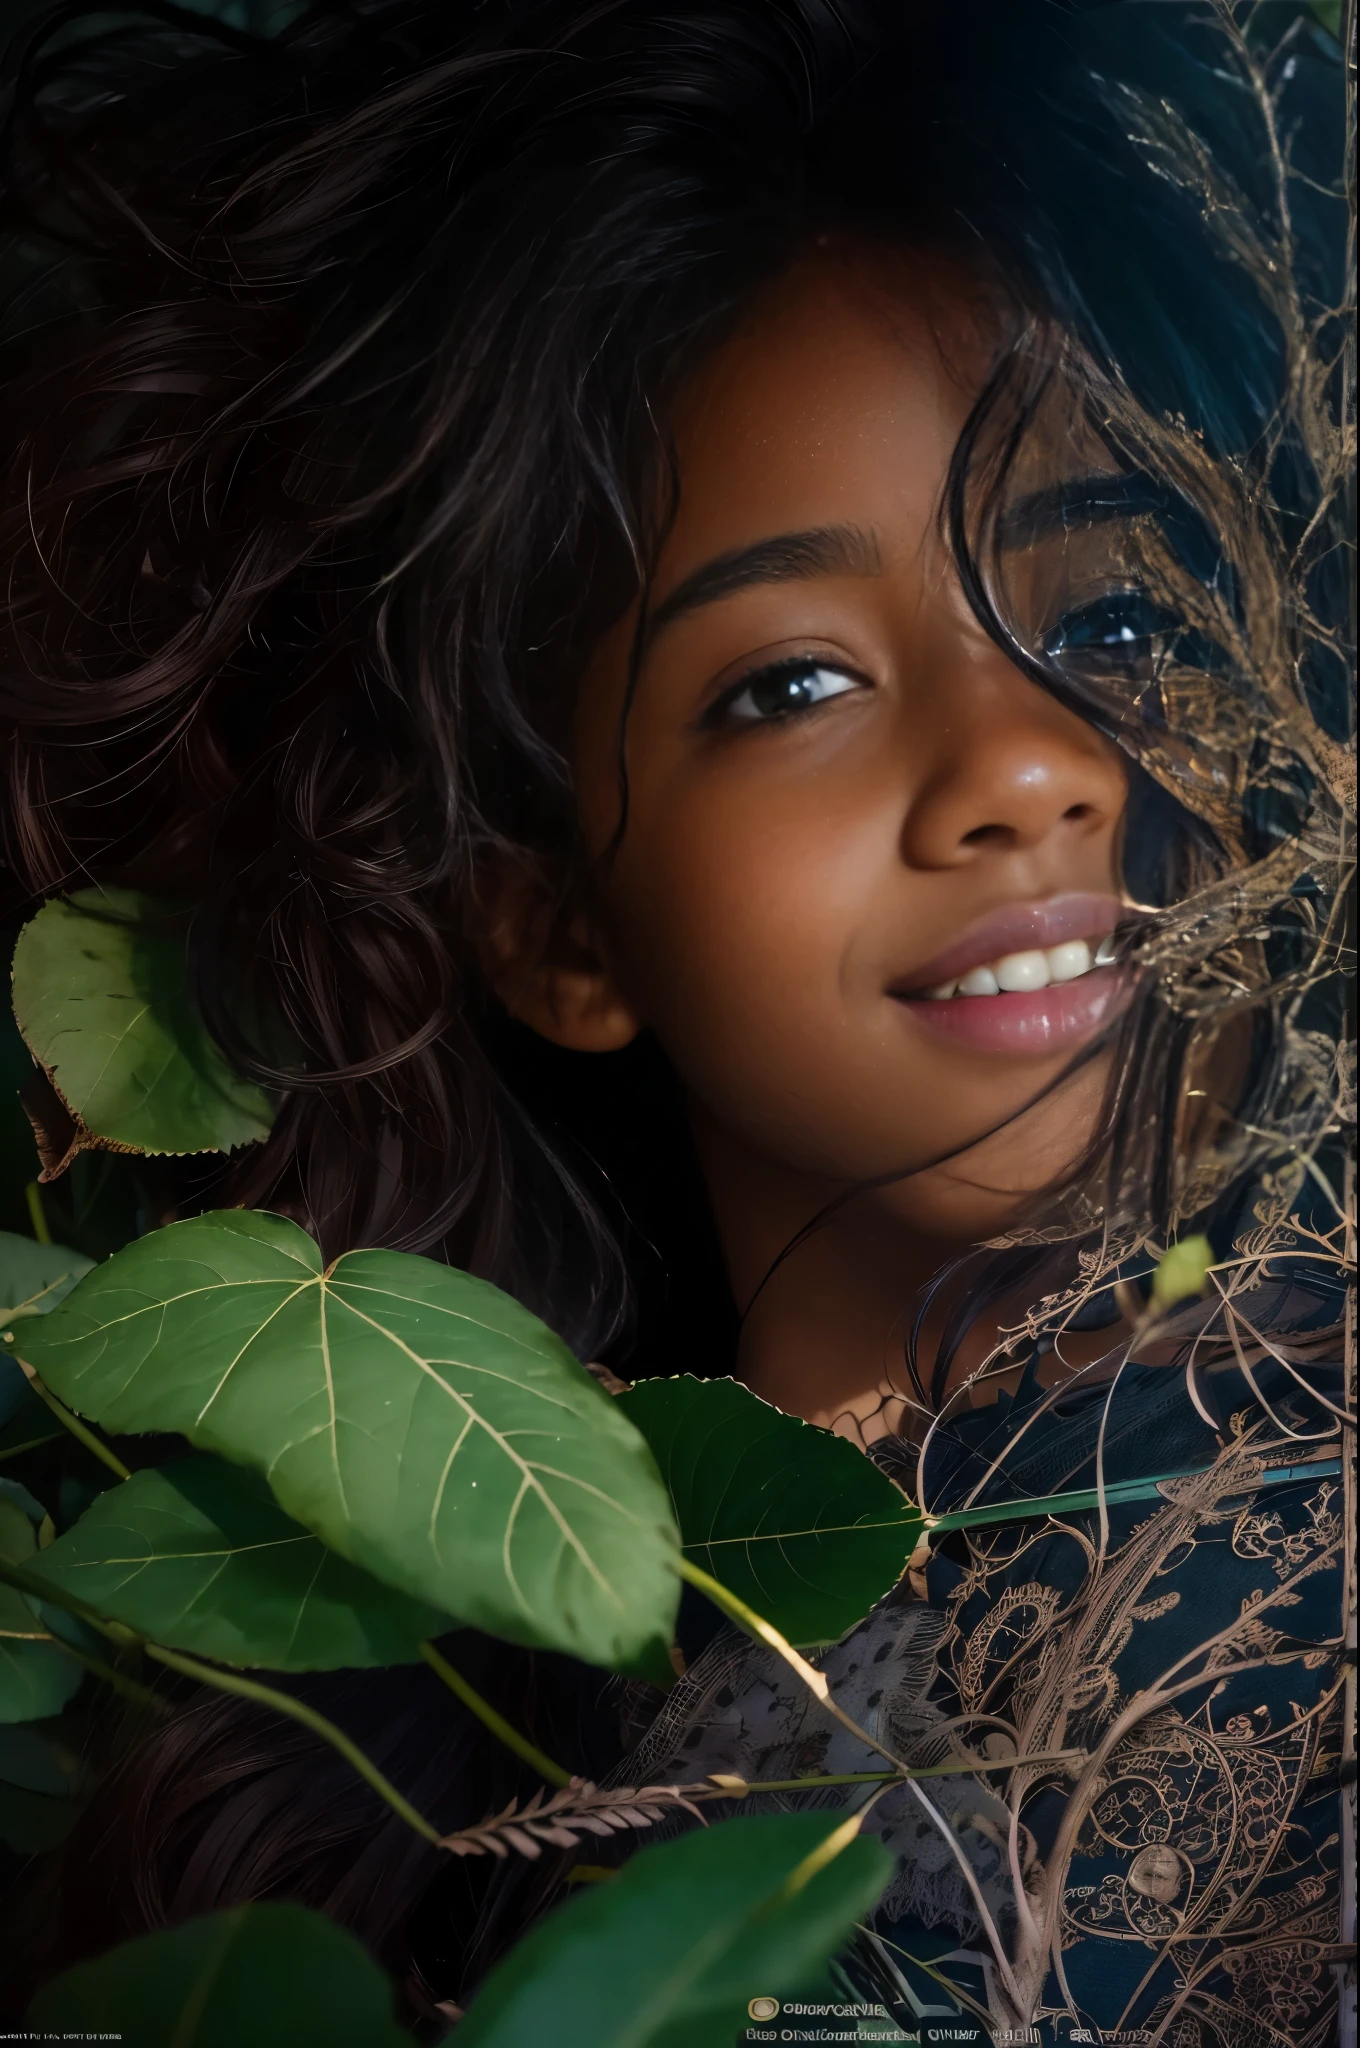 (肖像, 一個美麗的 13 歲黑人女孩的社論照片, 可愛的臉, 棕色長捲髮, ((淡褐色的眼睛)), 尼康D850, 電影庫存照片 ,4 柯達 Portra 400 ,相機 f1.6鏡頭 ,丰富的色彩 ,超現實 ,質感逼真, 戲劇性的燈光, (臉部細節非常豐富:1.4), 完美的眼睛, 逼真的虹膜, 完美的牙齒, (微笑:0.7), (背景暗, 樹葉的影子), (劈裂), 裸體主義者
